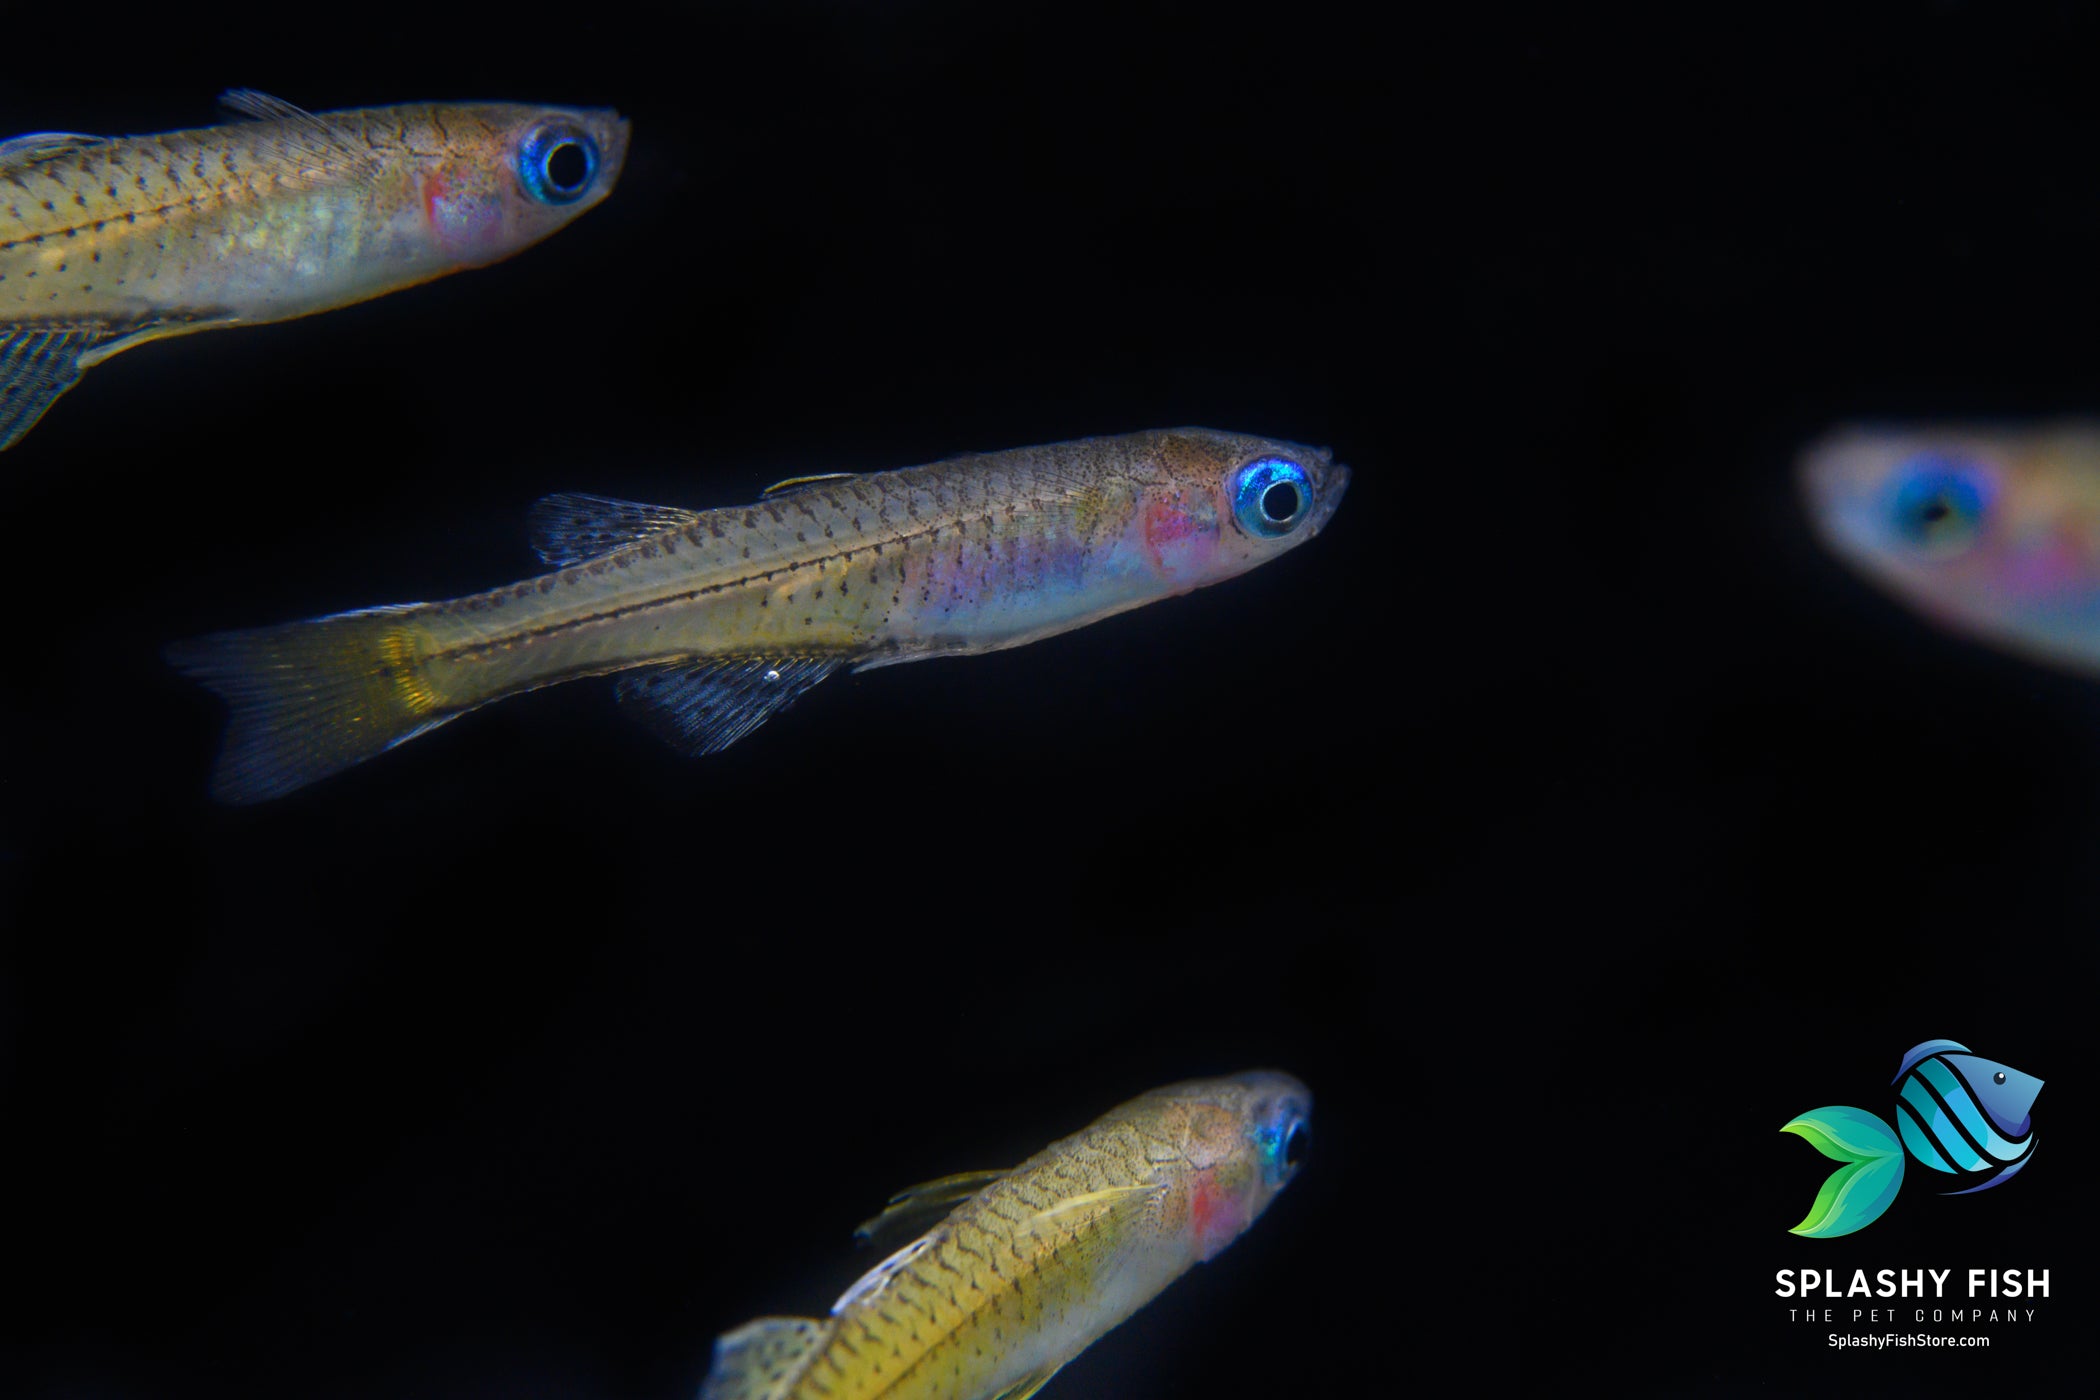 School of Blue Eye Dwarf Rainbow Fish in a freshwater aquarium fish tank